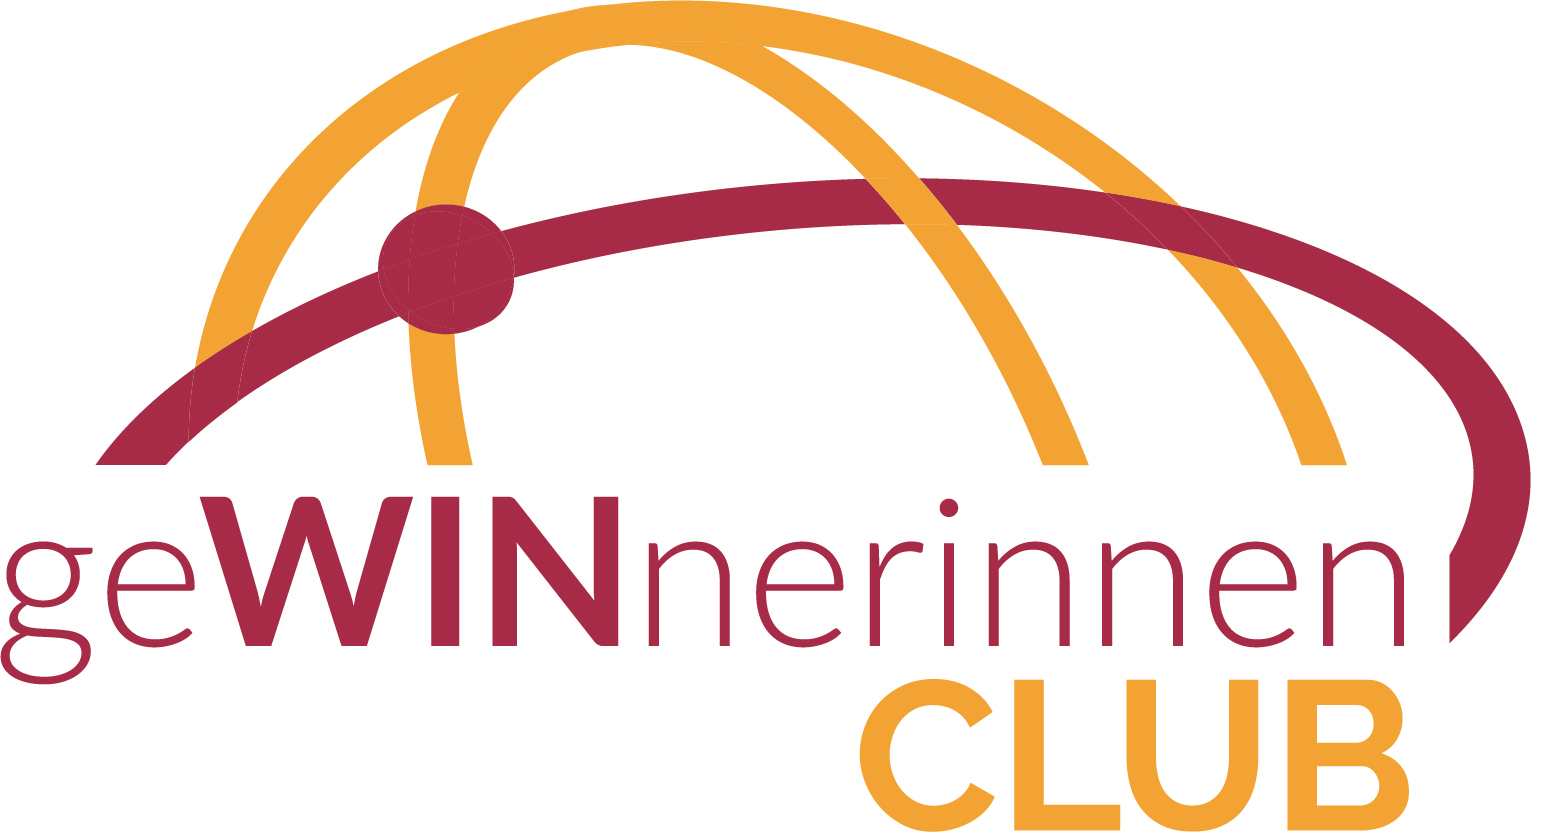 Logo GeWINnerinnenclub